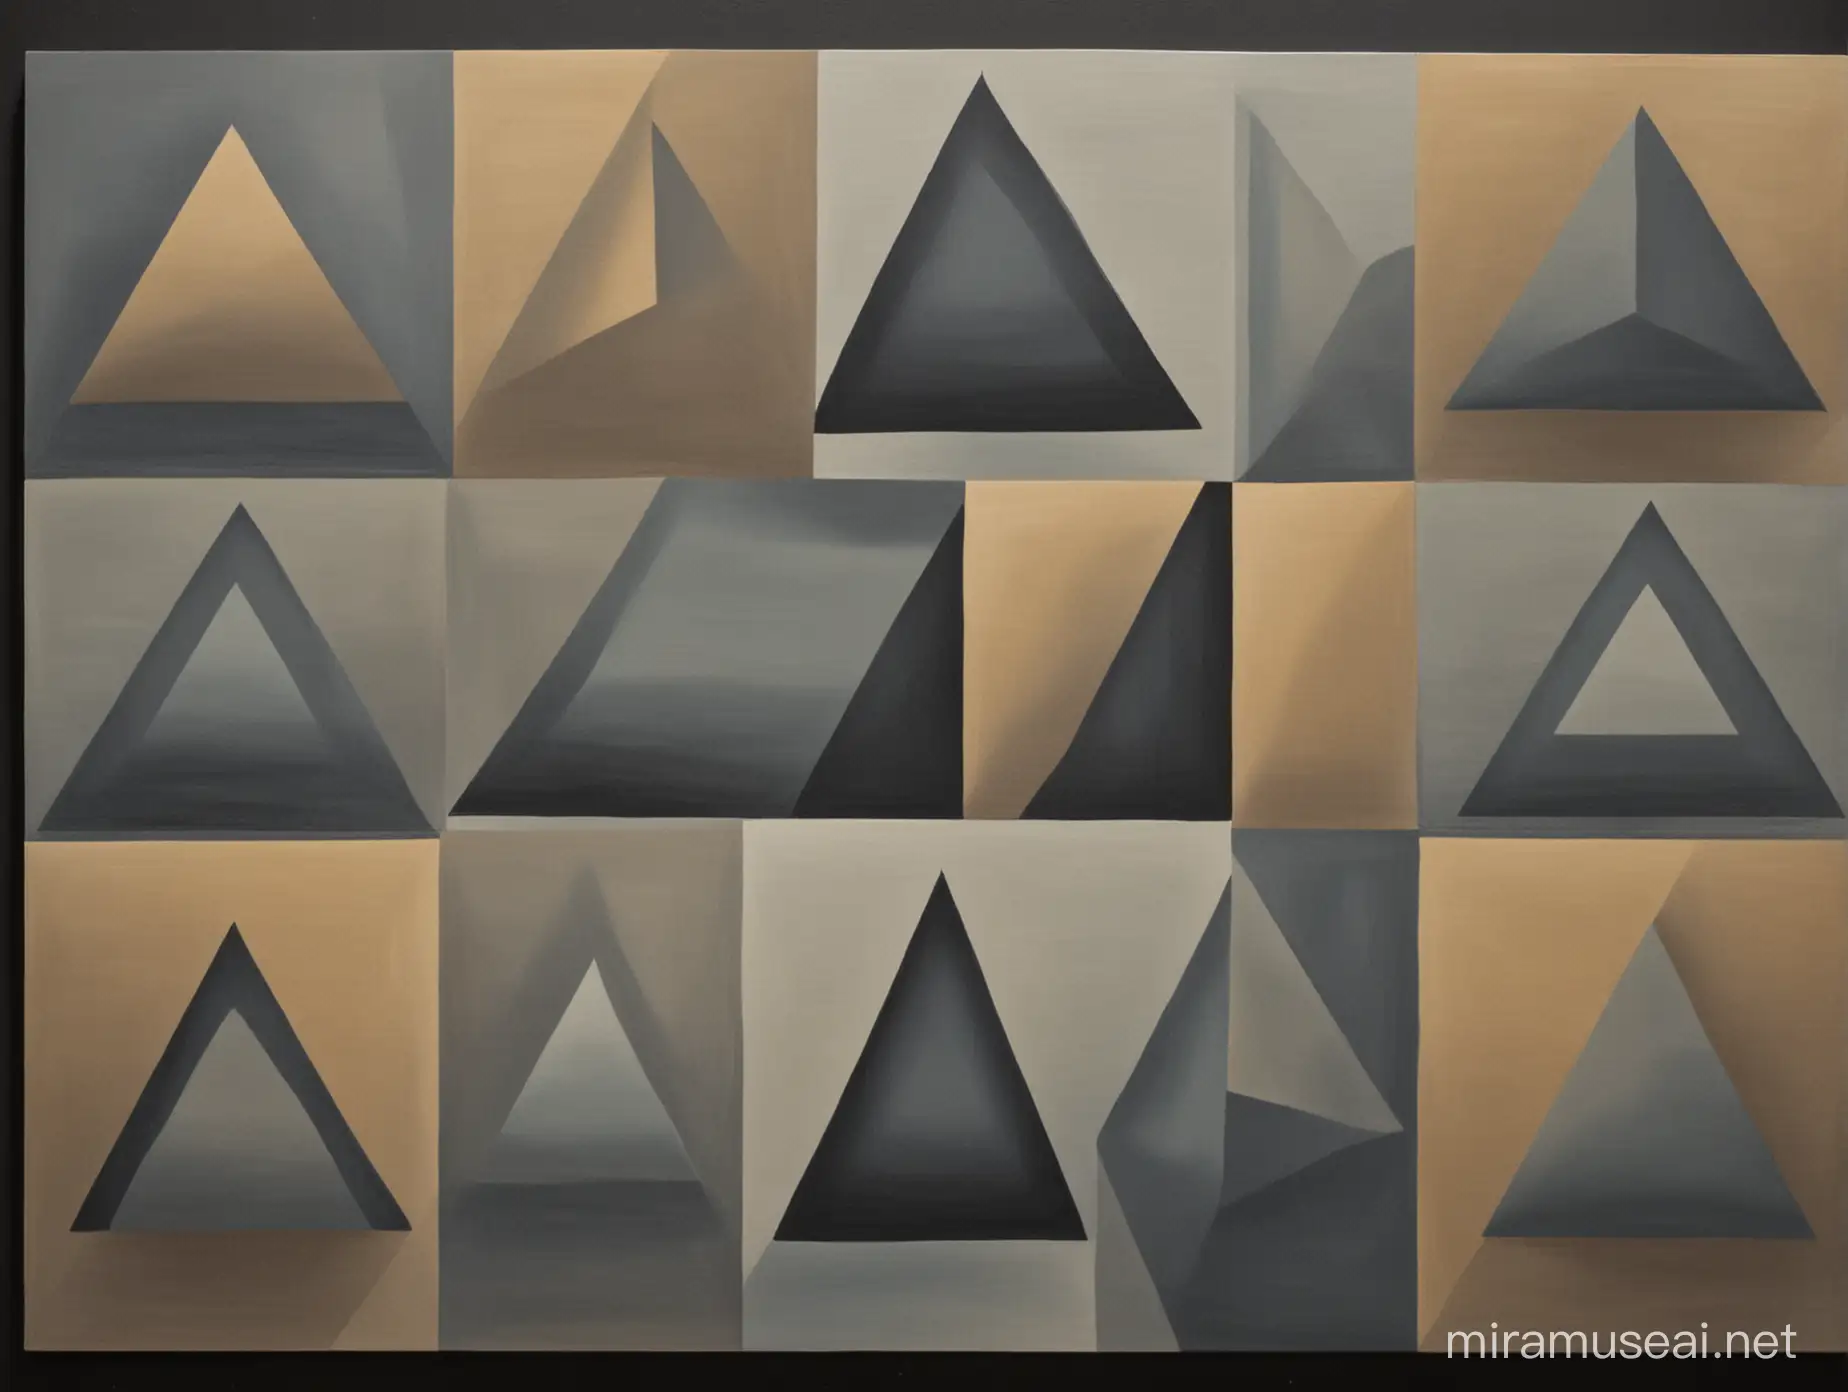 schilder 2 vlakke driehoeken en 4 vlakke rechthoeken zoals Vasarely
